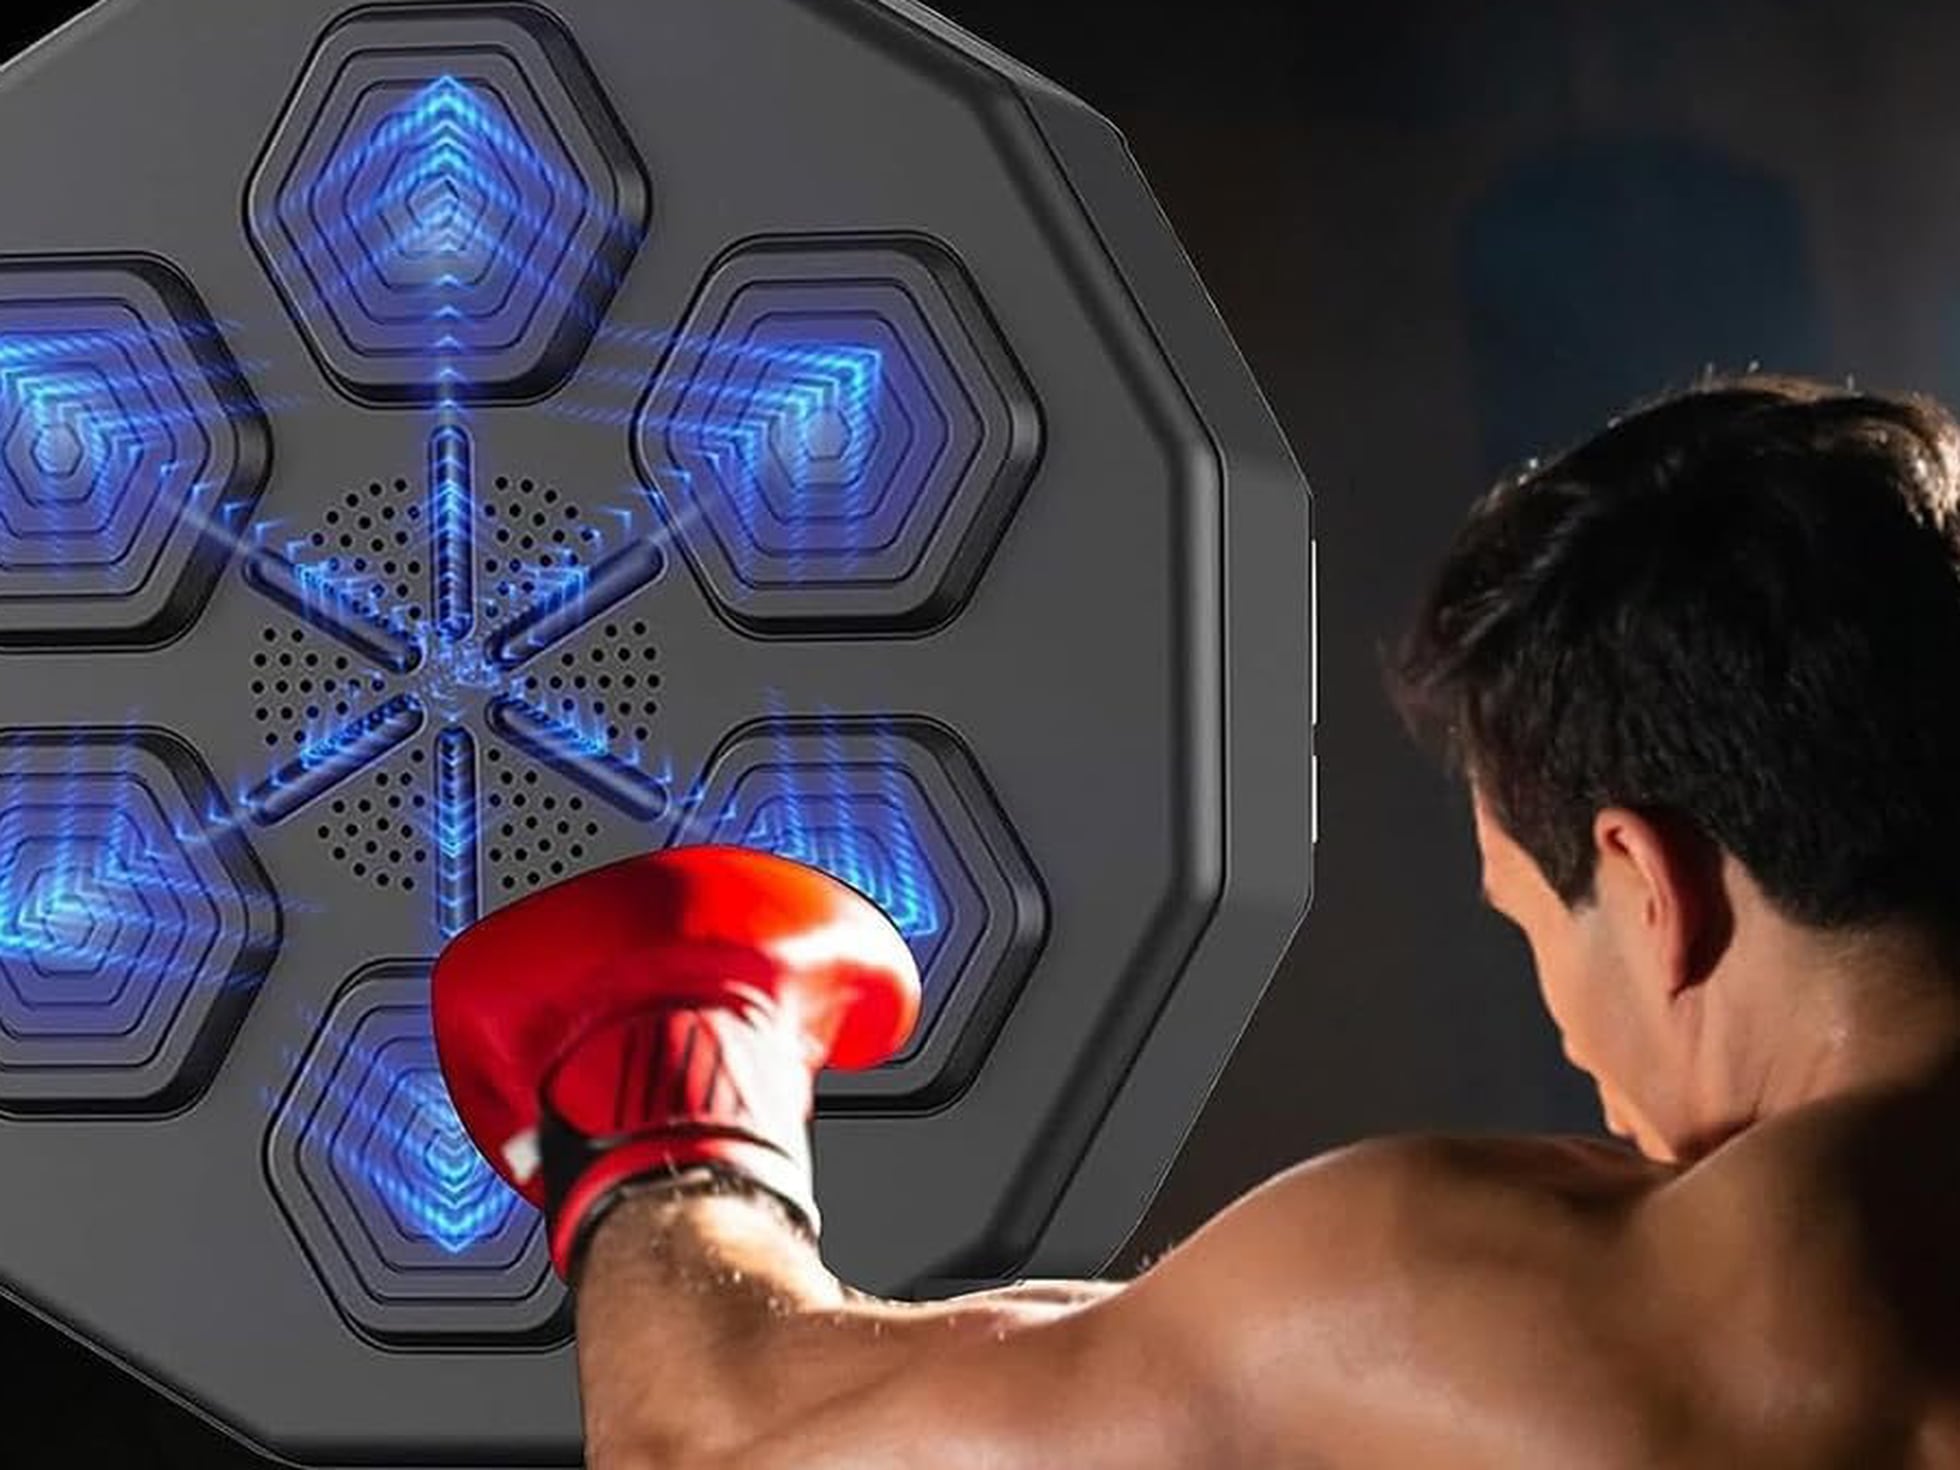 Máquina de boxeo musical: el último 'gadget' de moda en TikTok